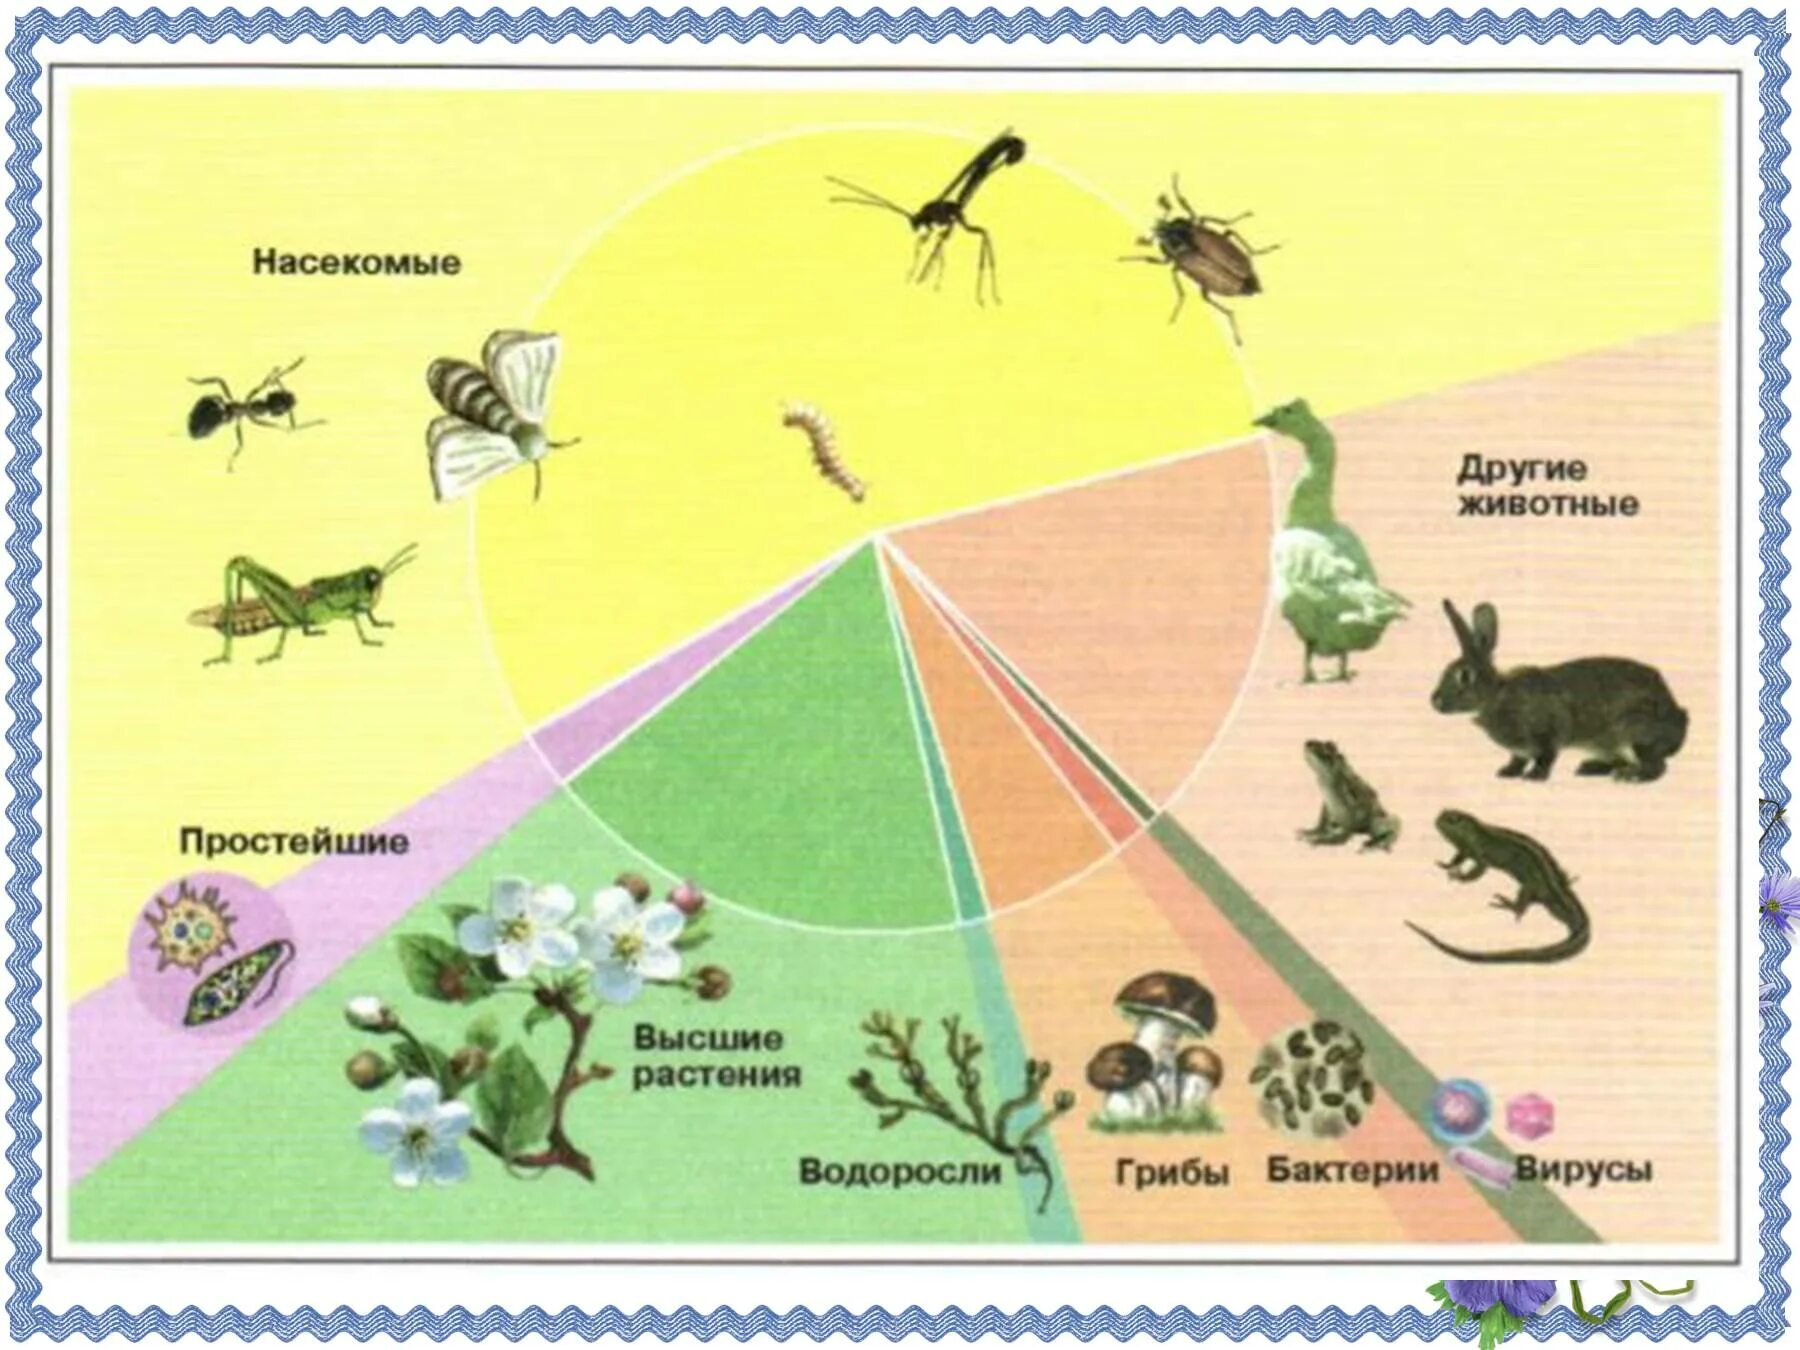 Разнообразие живых организмов на земле. Число видов насекомых. Число видов живых организмов на земле. Численность видов животных. Многообразие видов на земле.